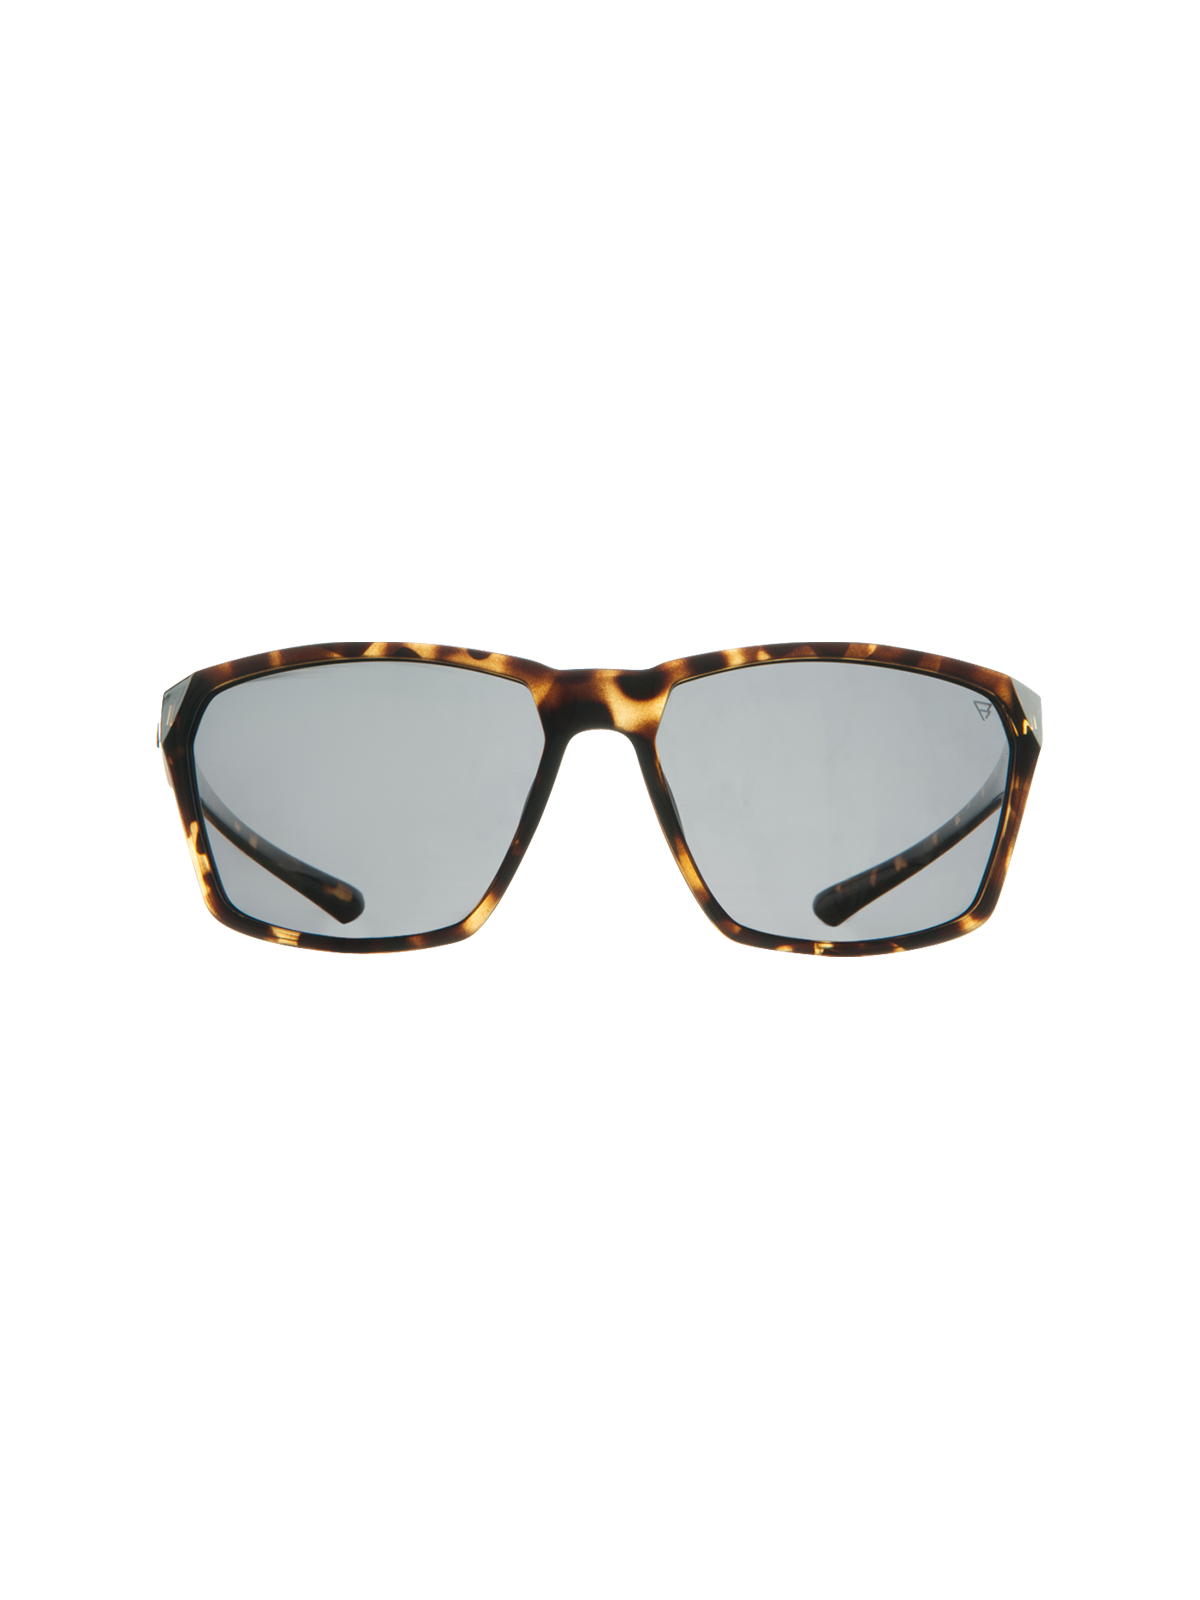 Cosmos Unisex Sunglasses | Brown